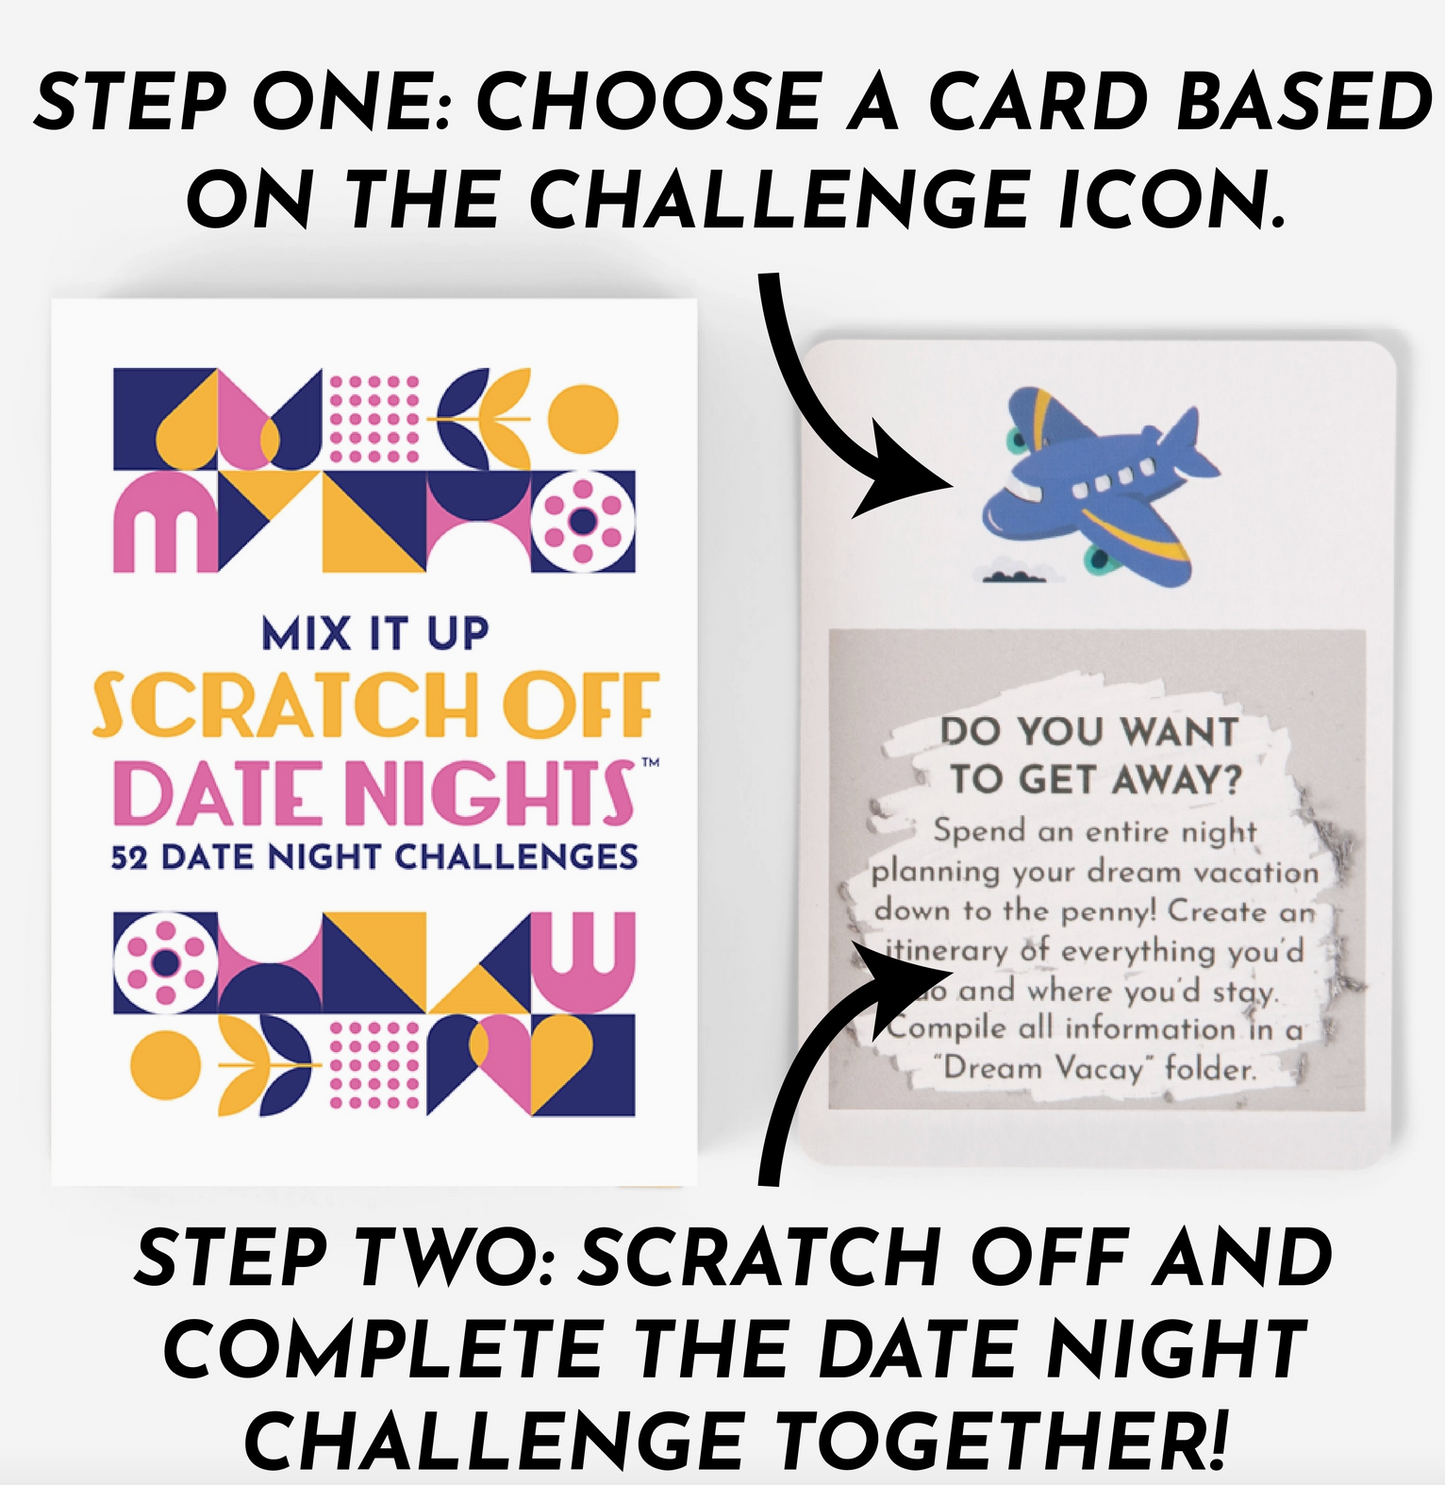 Scratch Off Date Night Card Deck